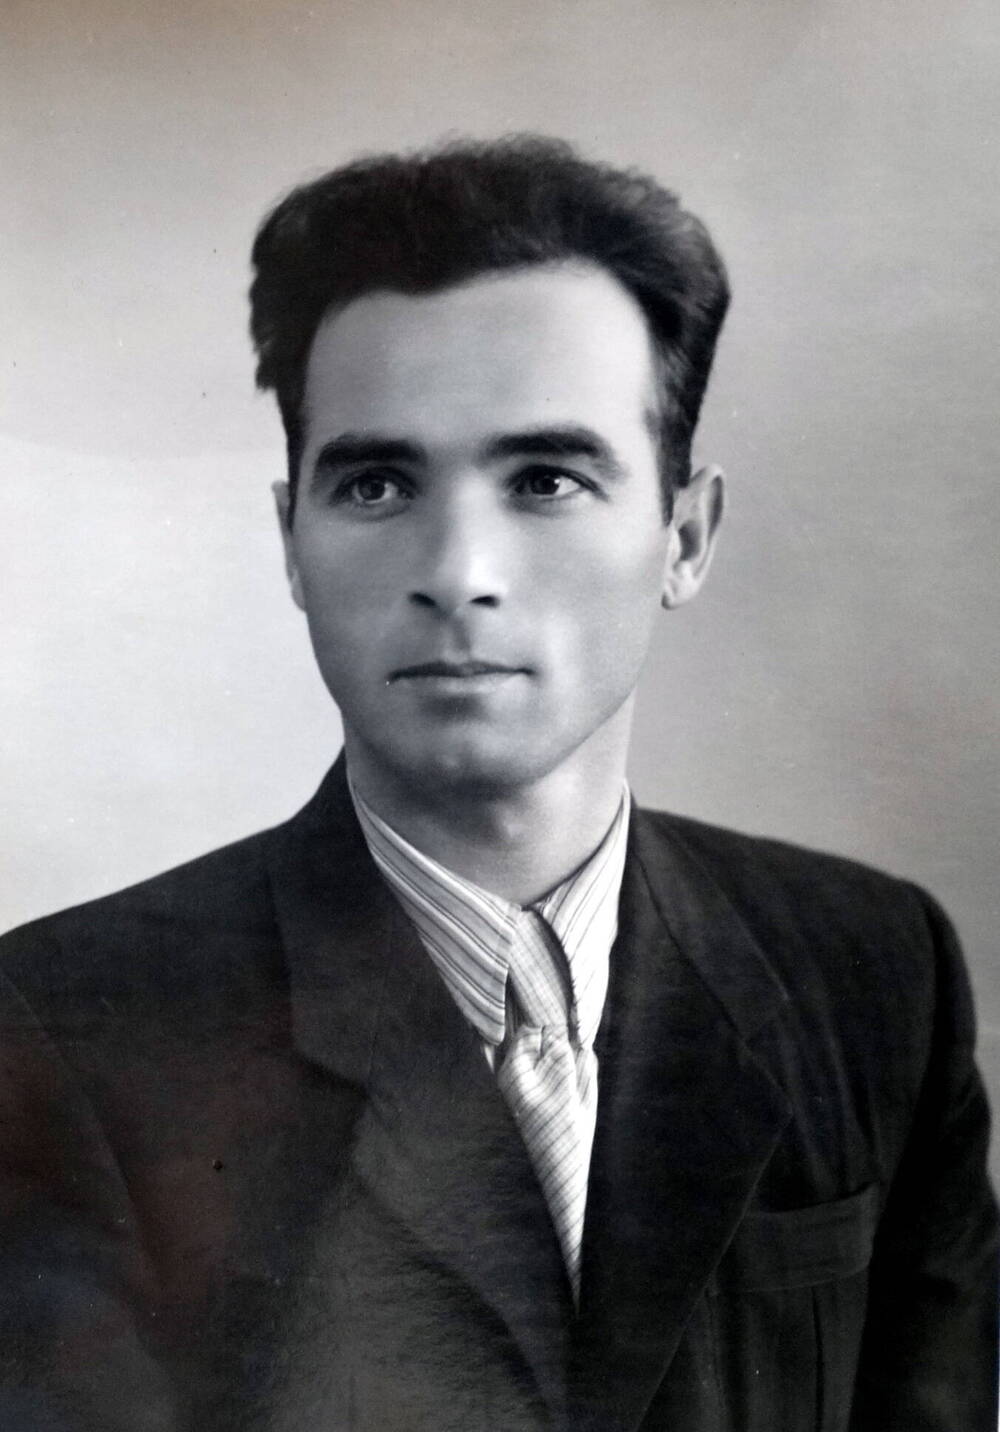 Фото. Борис Ходов - актер Осетинского драмтеатра, 1950-е г.г.